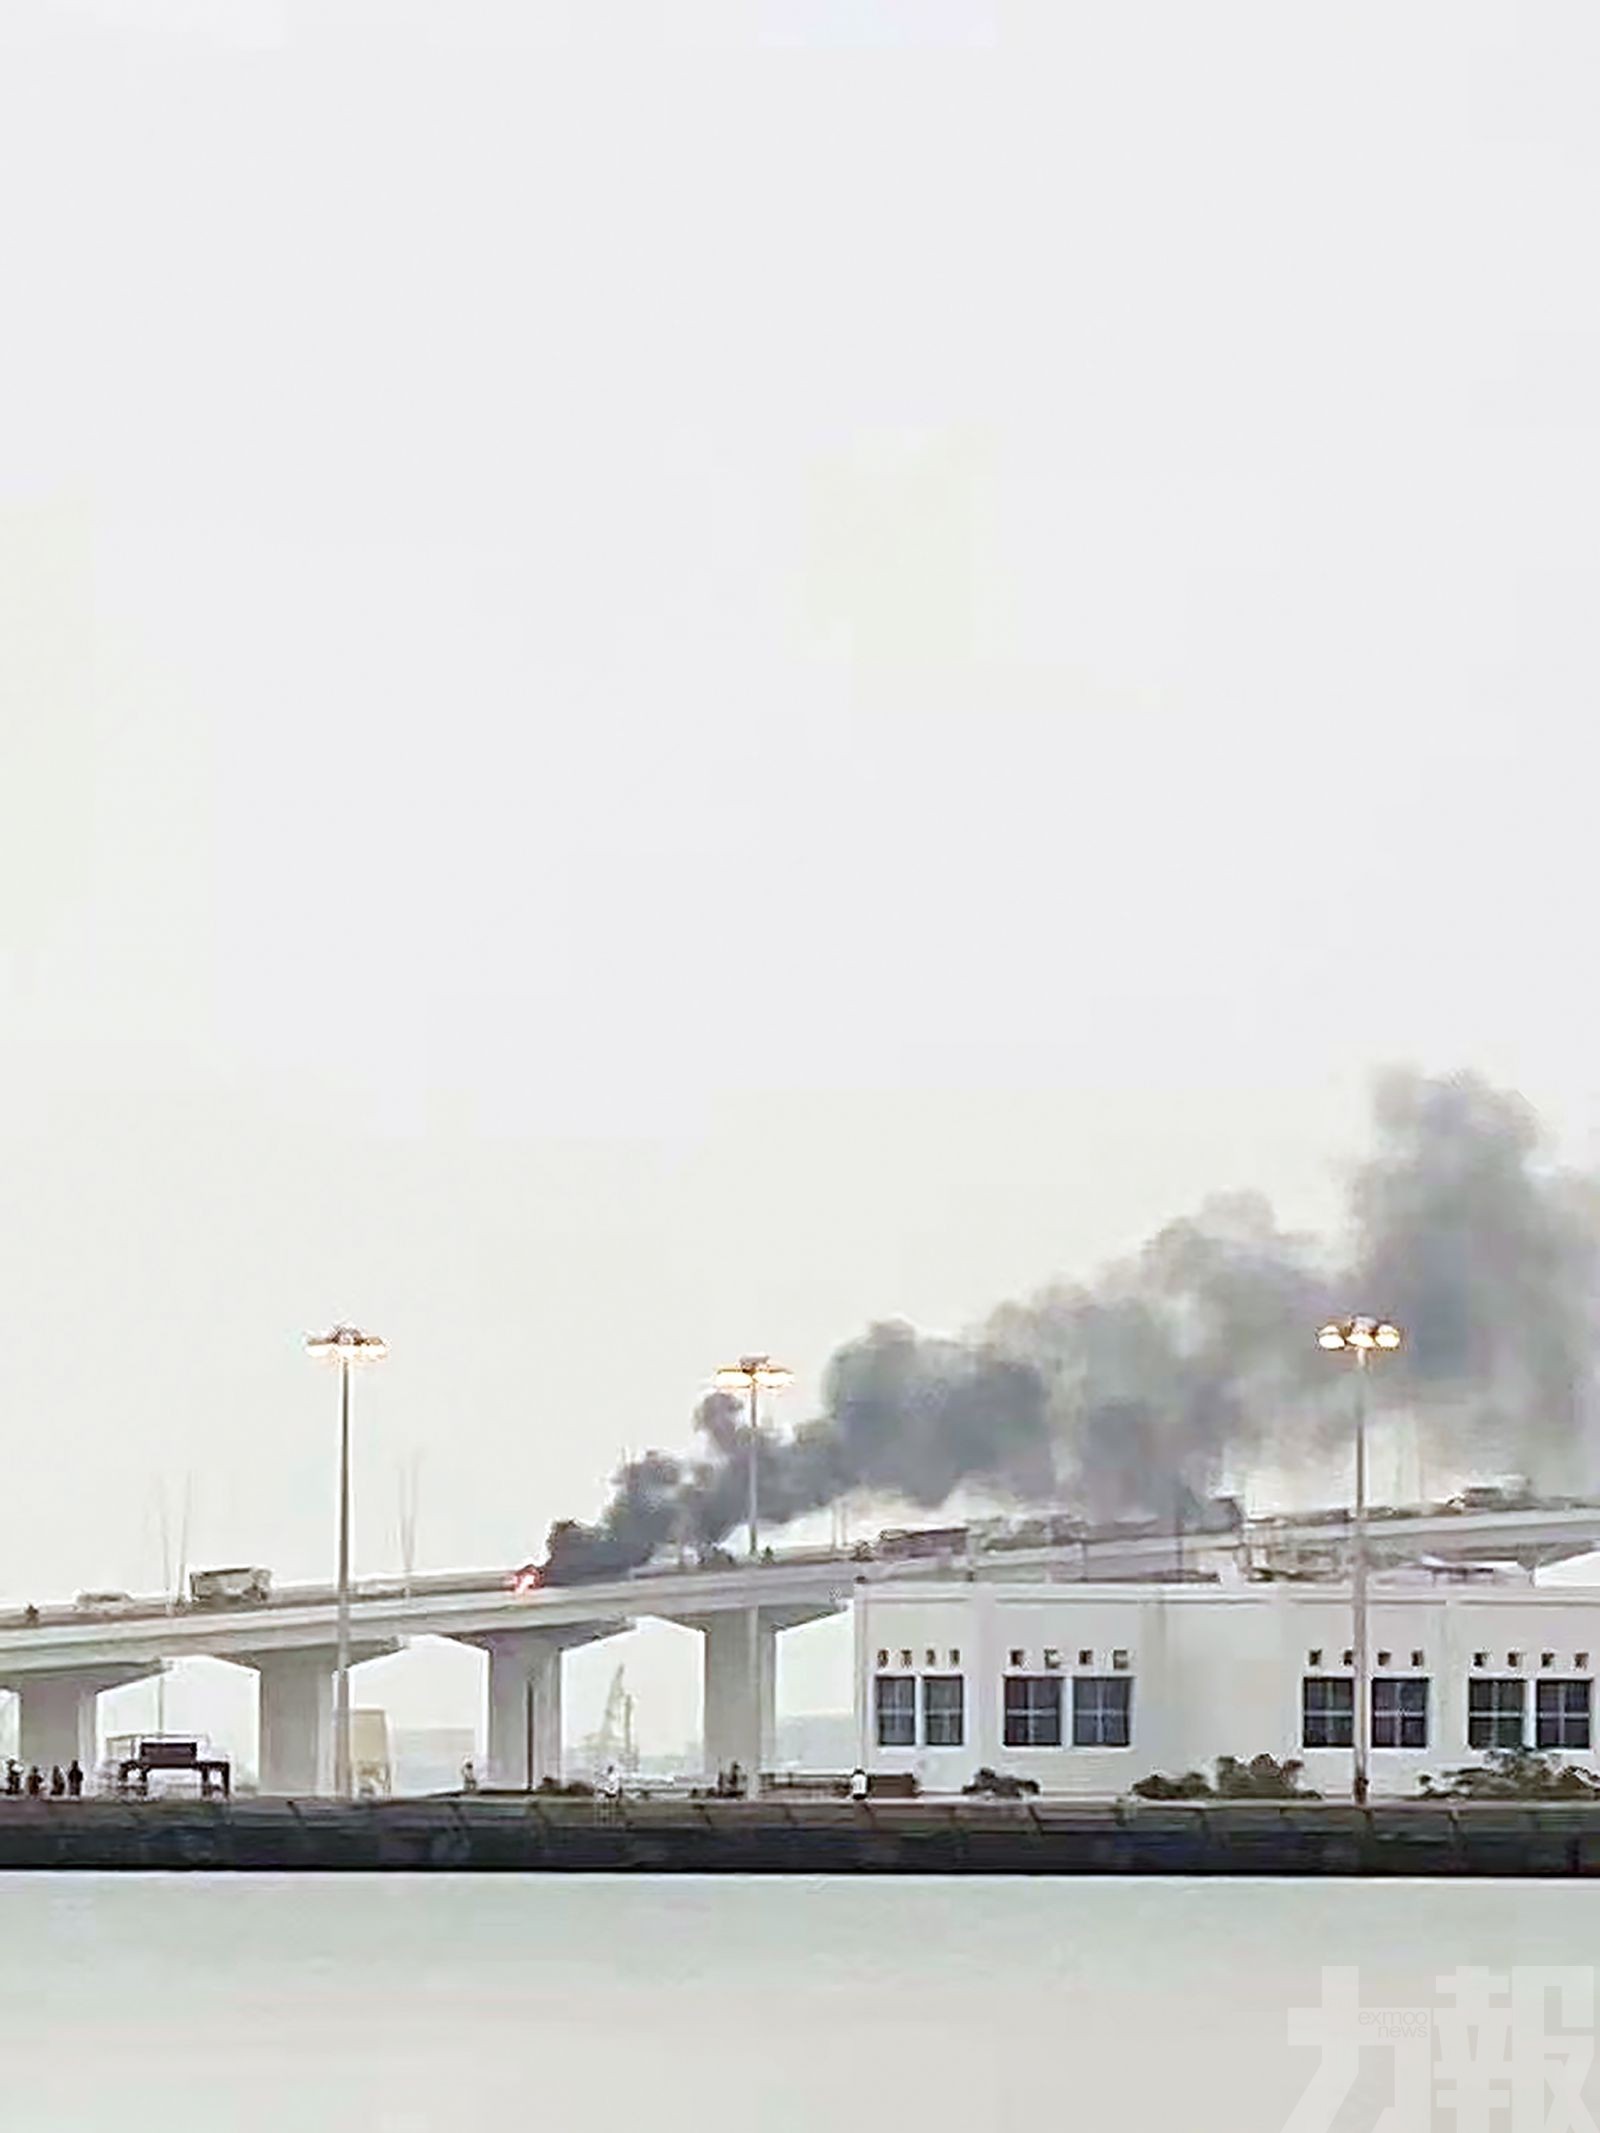 友誼橋越野車起火燒剩車架